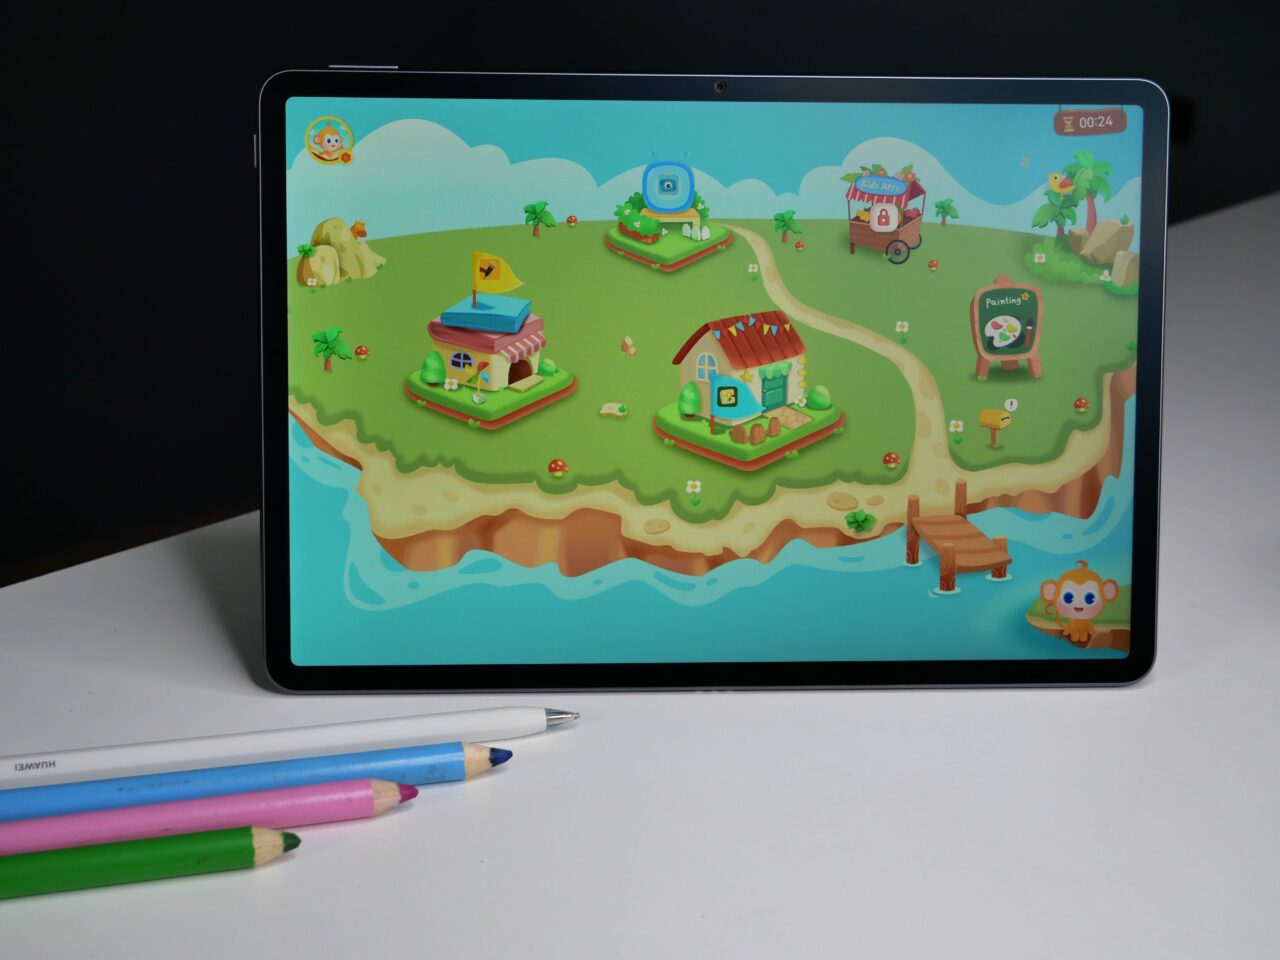 Tablet na białym stole z wyświetlonym kolorowym interfejsem gry edukacyjnej dla dzieci oraz leżące obok kolorowe kredki.